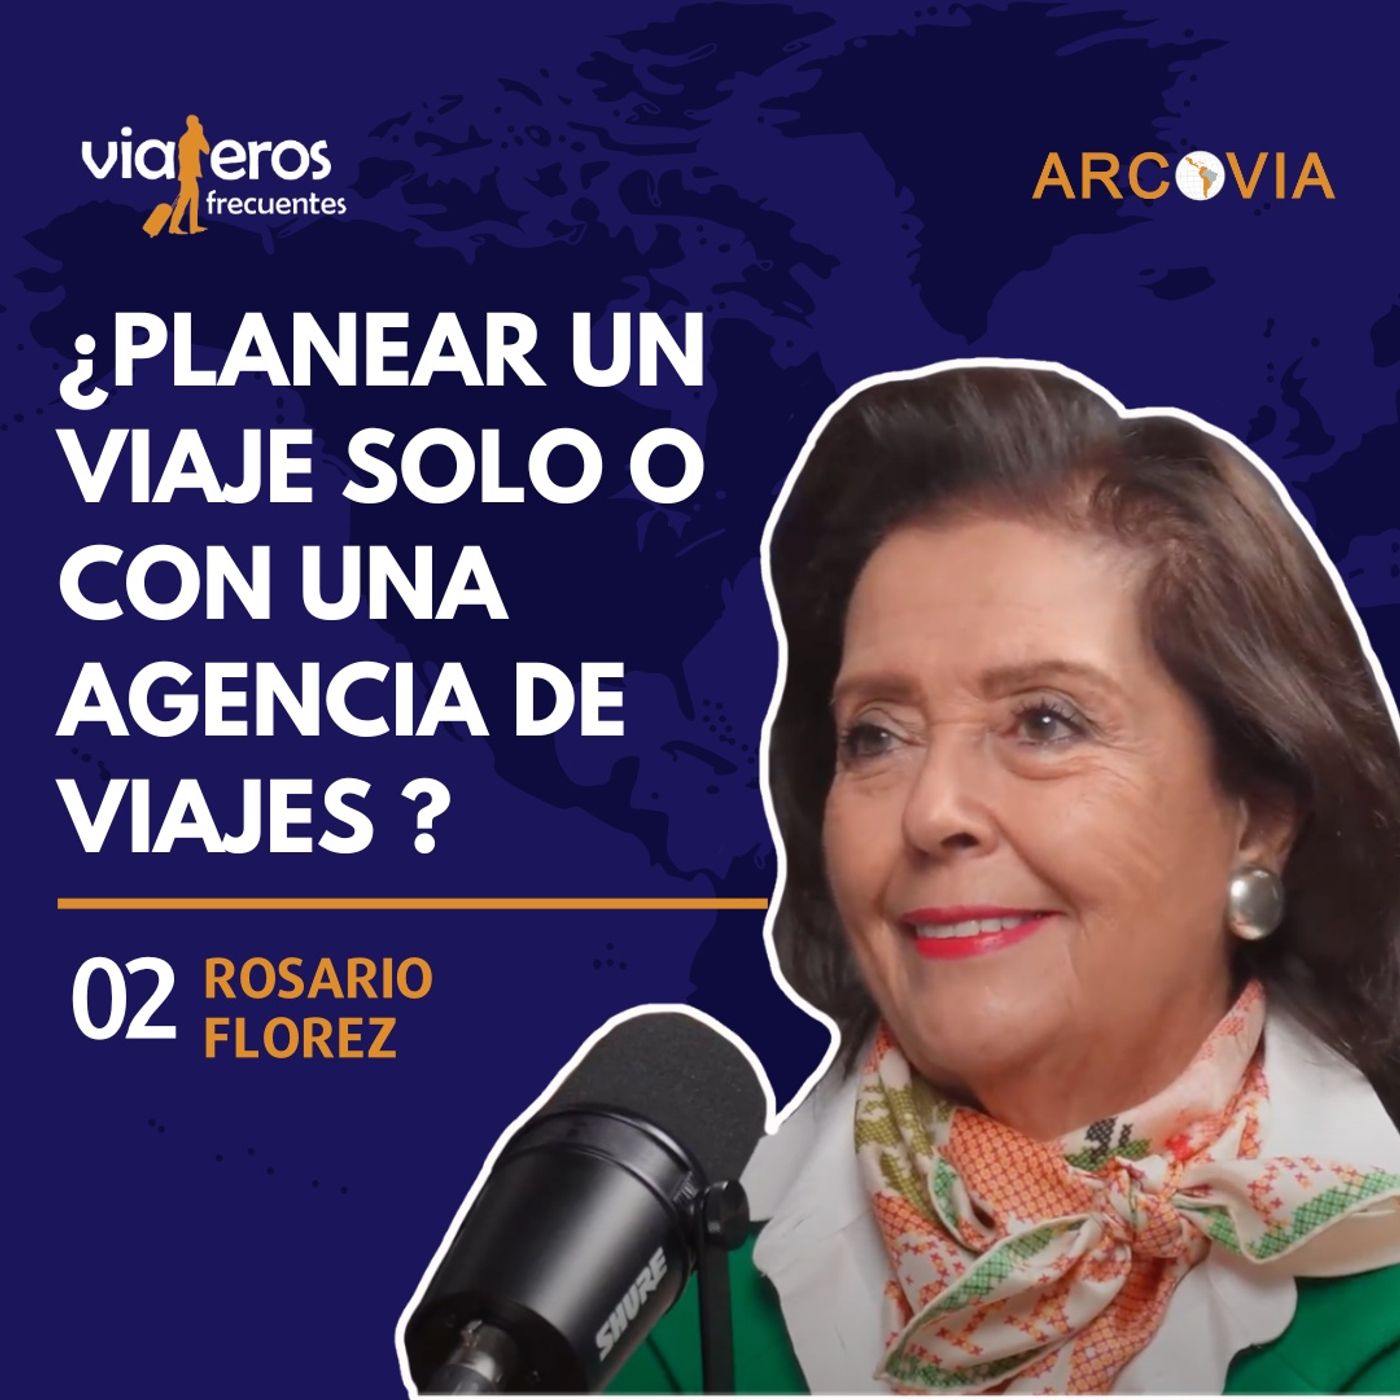 02. ¿Cómo funciona una agencia de viajes? | Rosario Florez